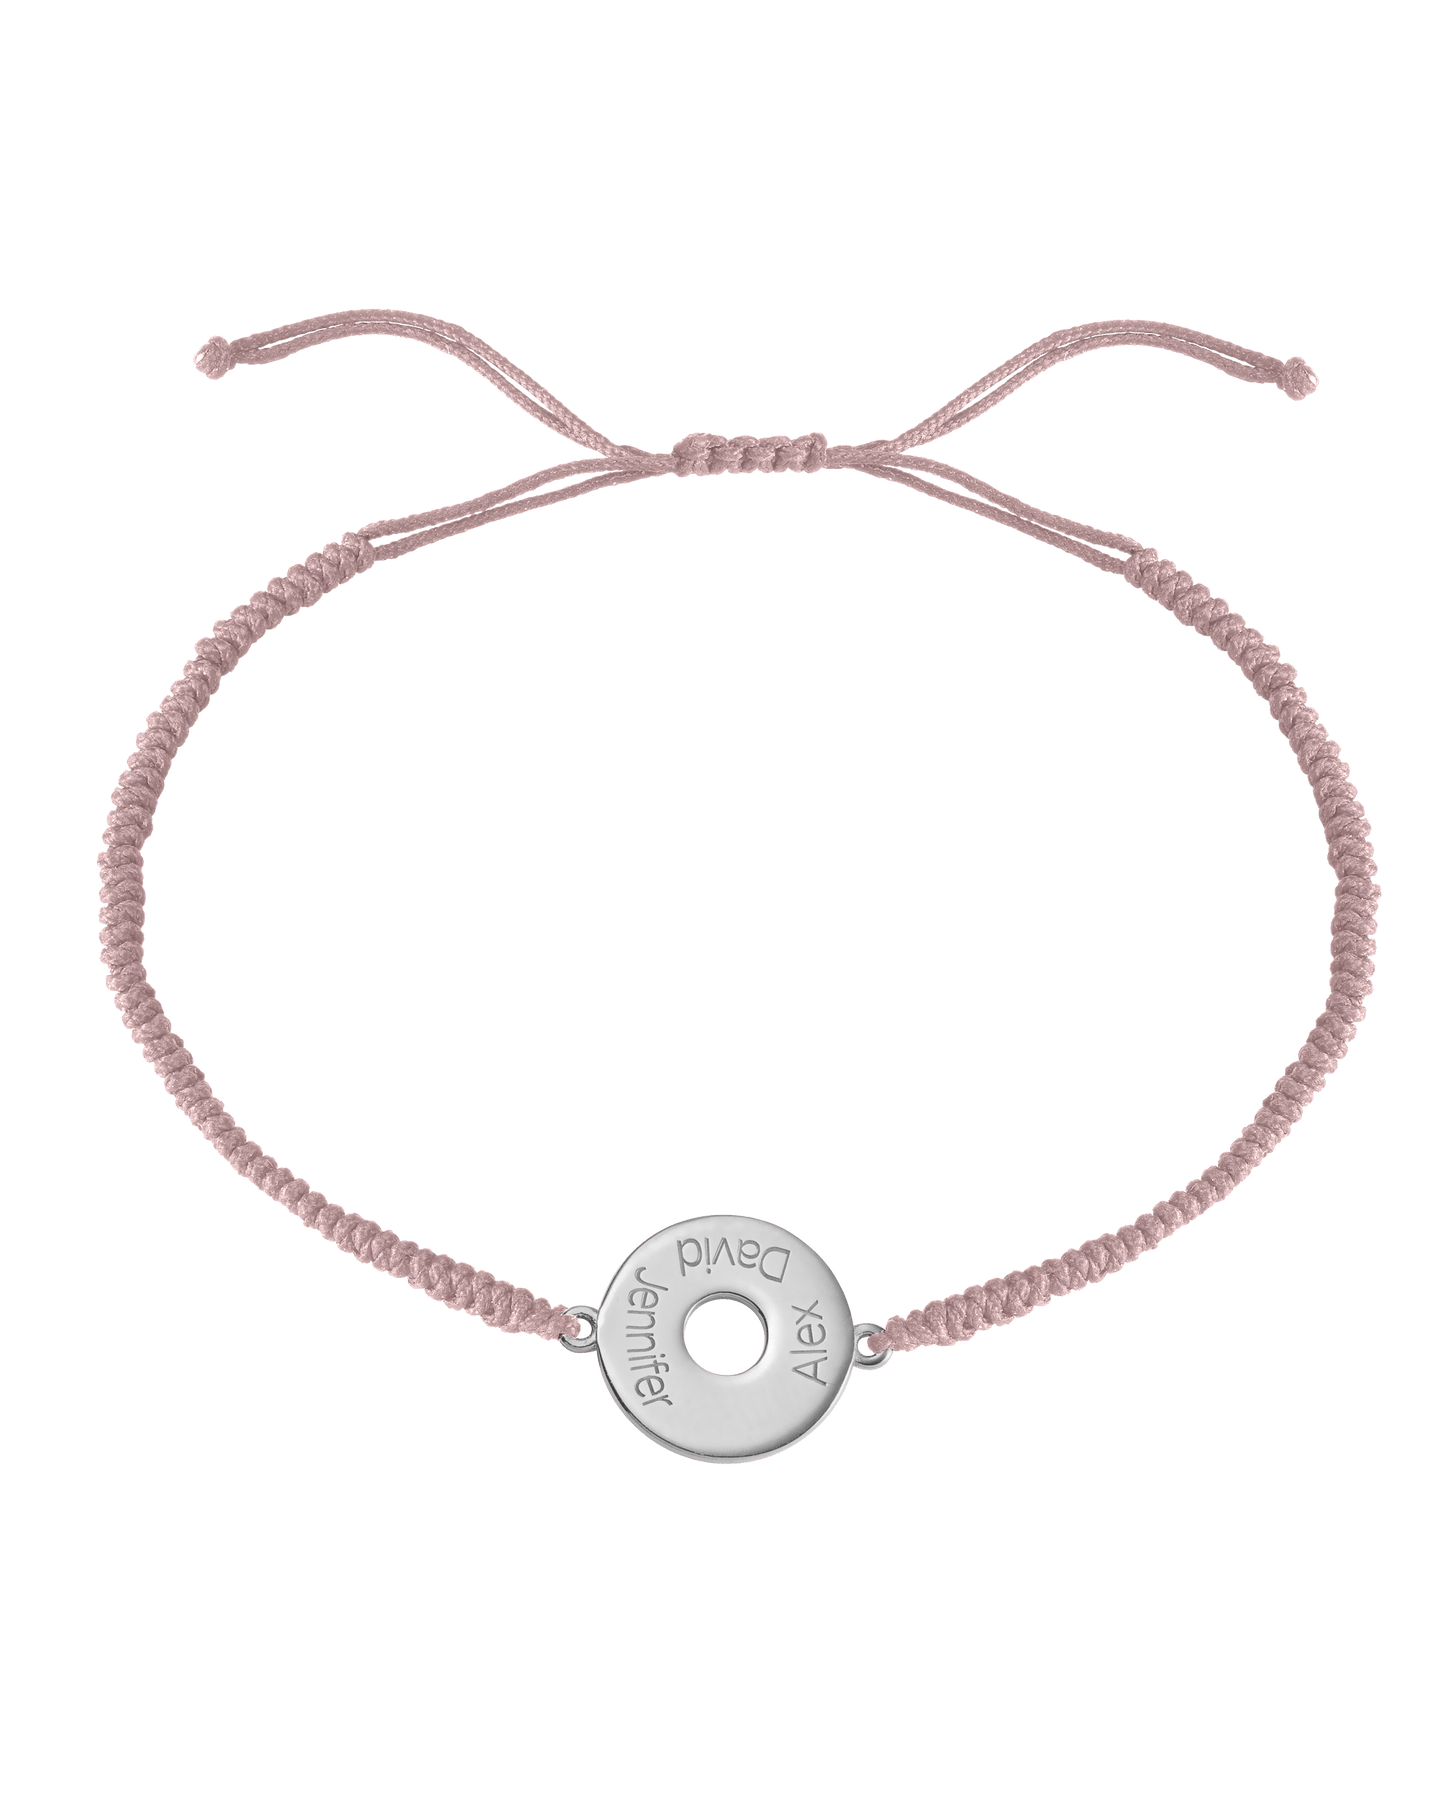 Donut Cord Bracelet - 925 Sterling Silver Bracelets magal-dev Light Pink 1 Names Adjustable from 4" to 9"